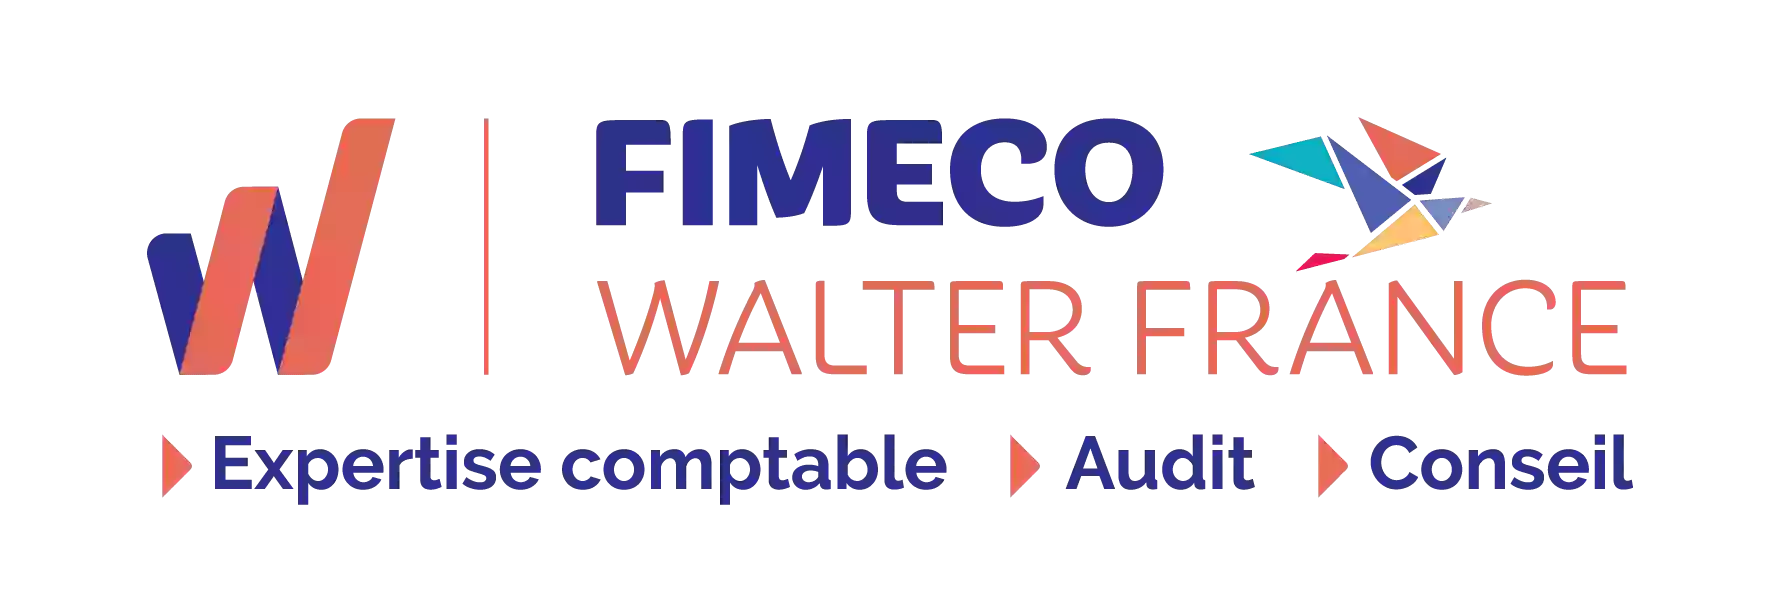 FIMECO Walter France- COMPTABLE -CABINET EXPERT COMPTABLE - COMMISSAIRE AUX COMPTES - SARLAT - BERGERAC - DORDOGNE